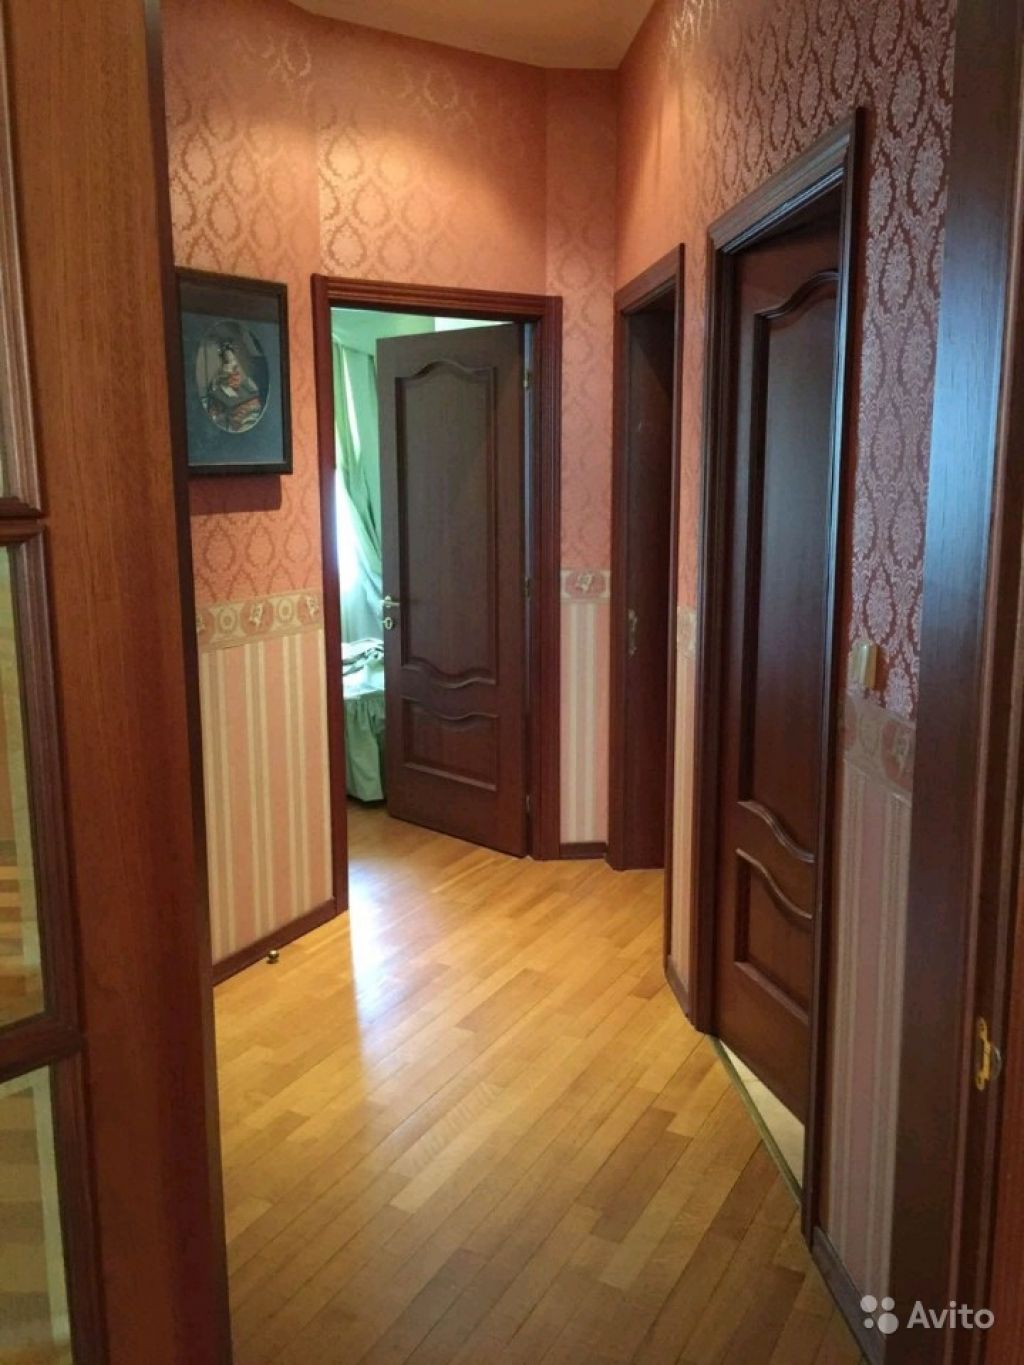 Сдам квартиру 3-к квартира 105 м² на 3 этаже 17-этажного кирпичного дома в Москве. Фото 1